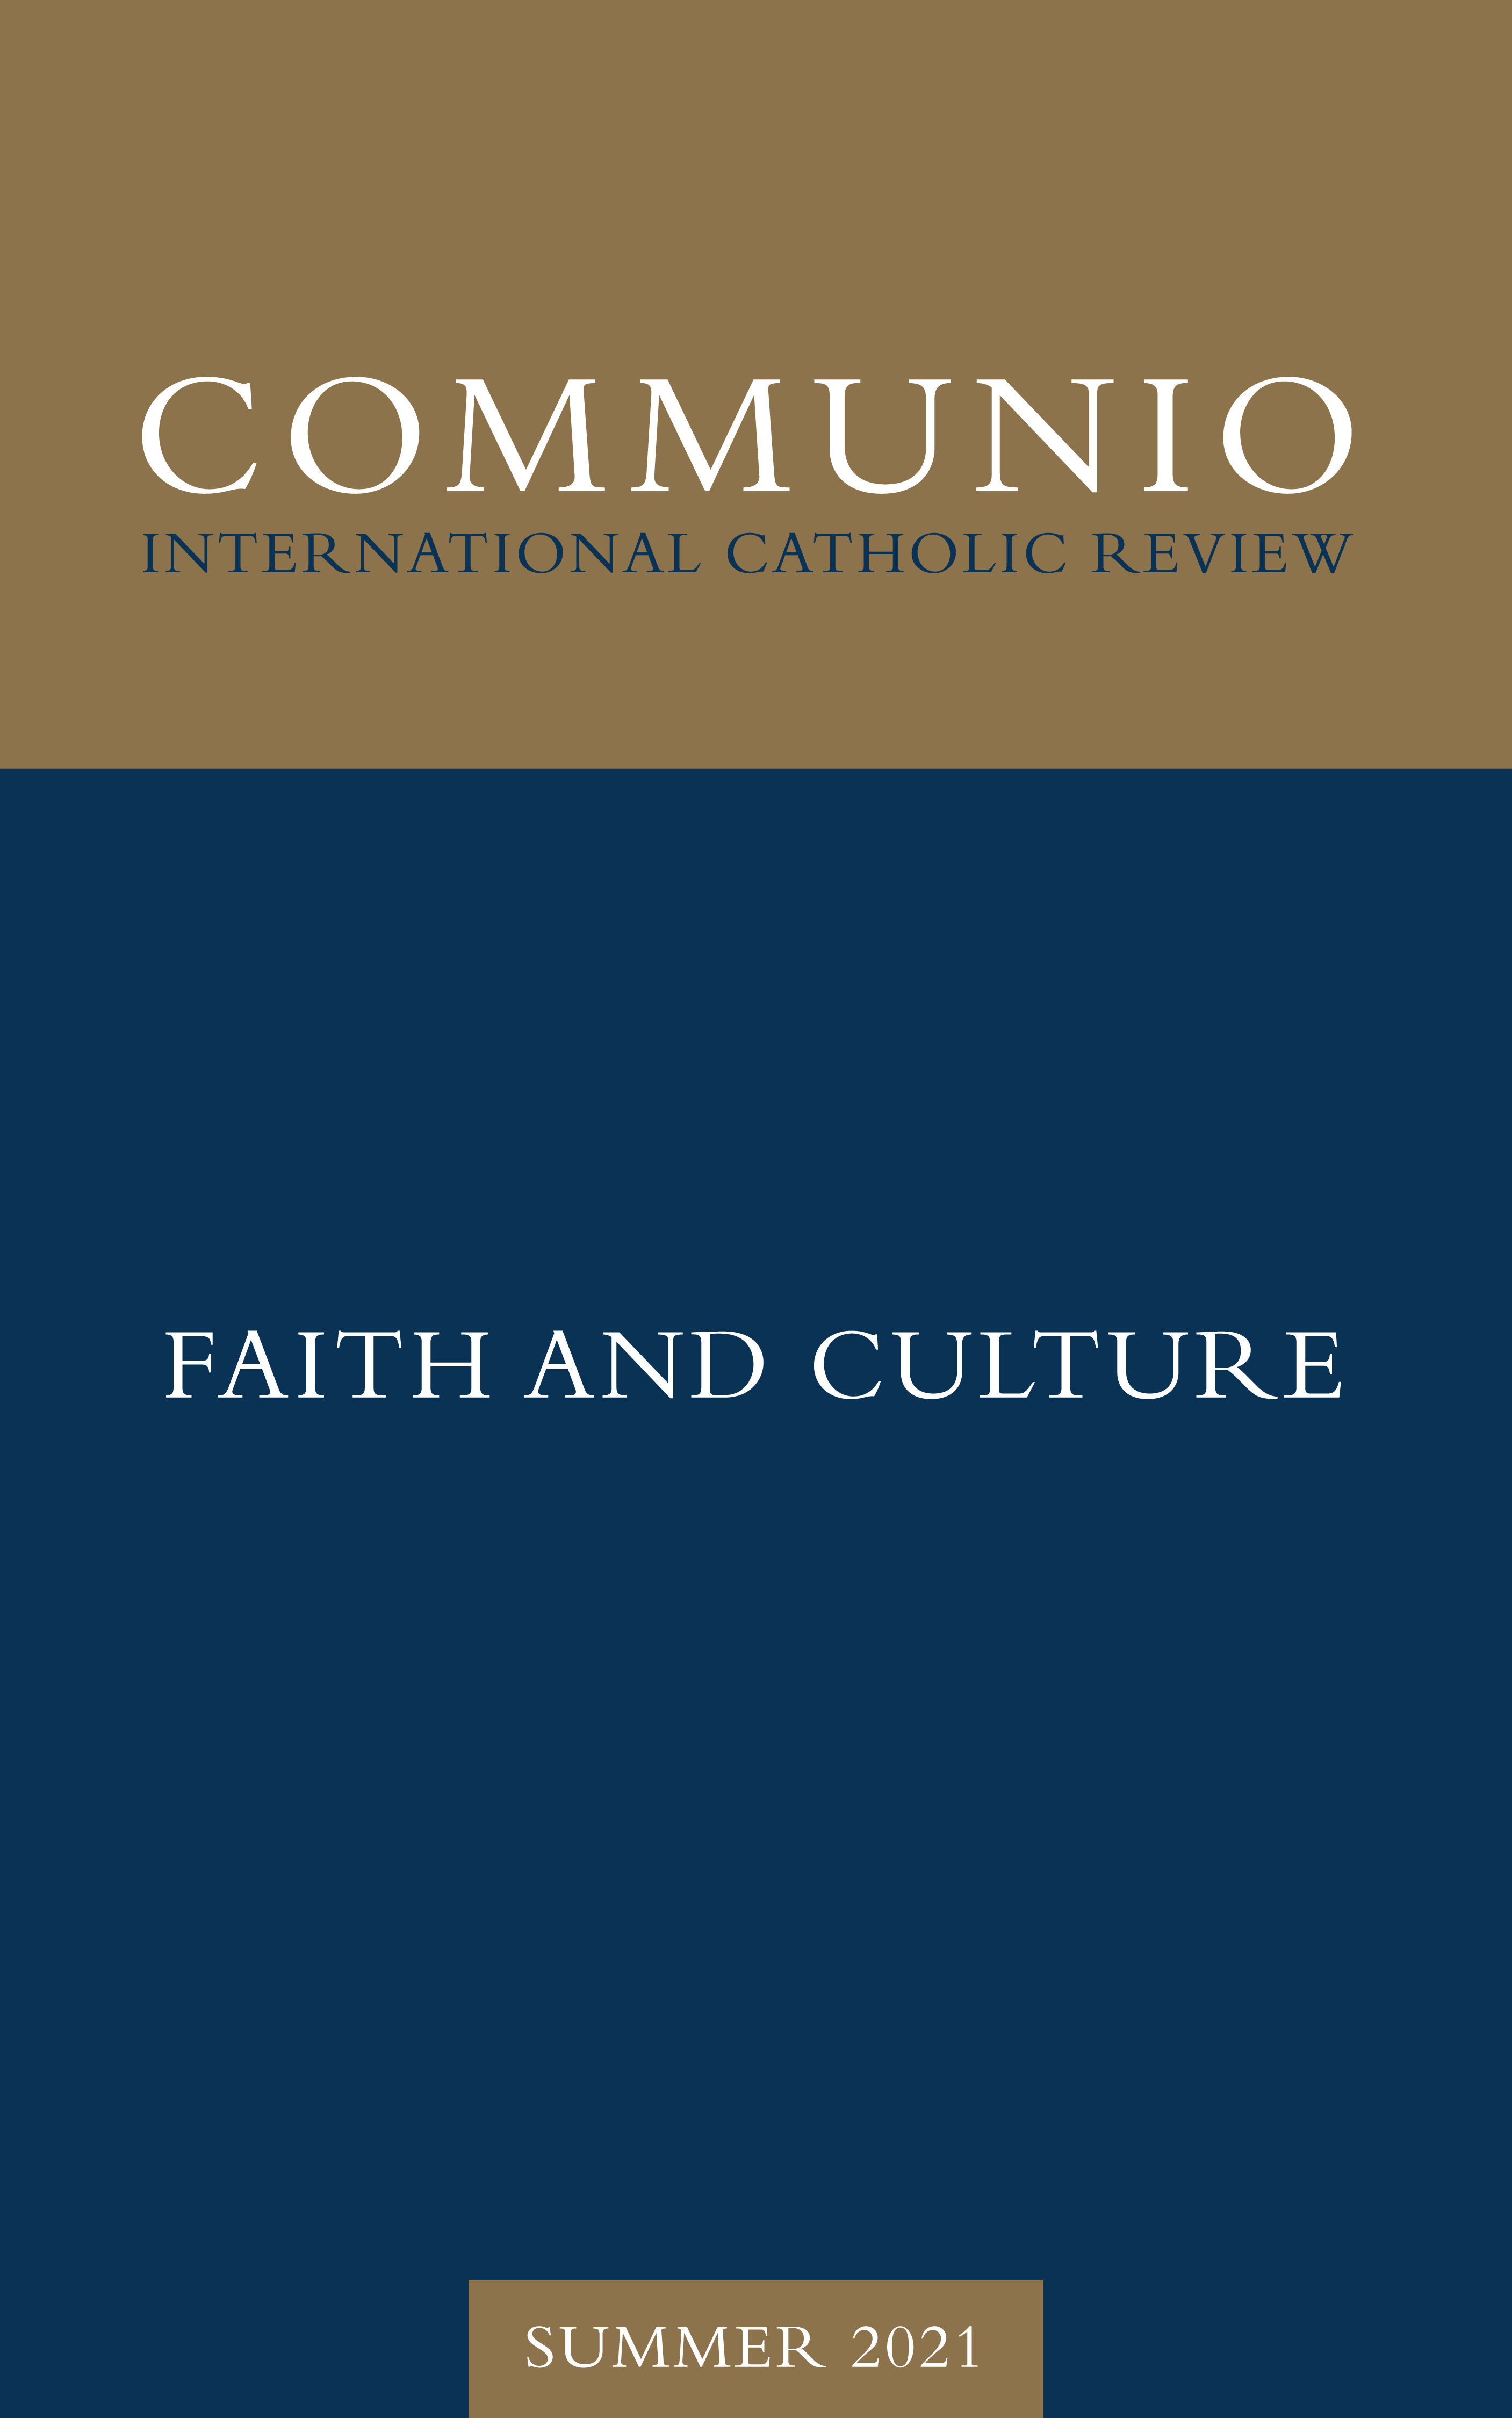 Communio - Summer 2021 - Faith and Culture